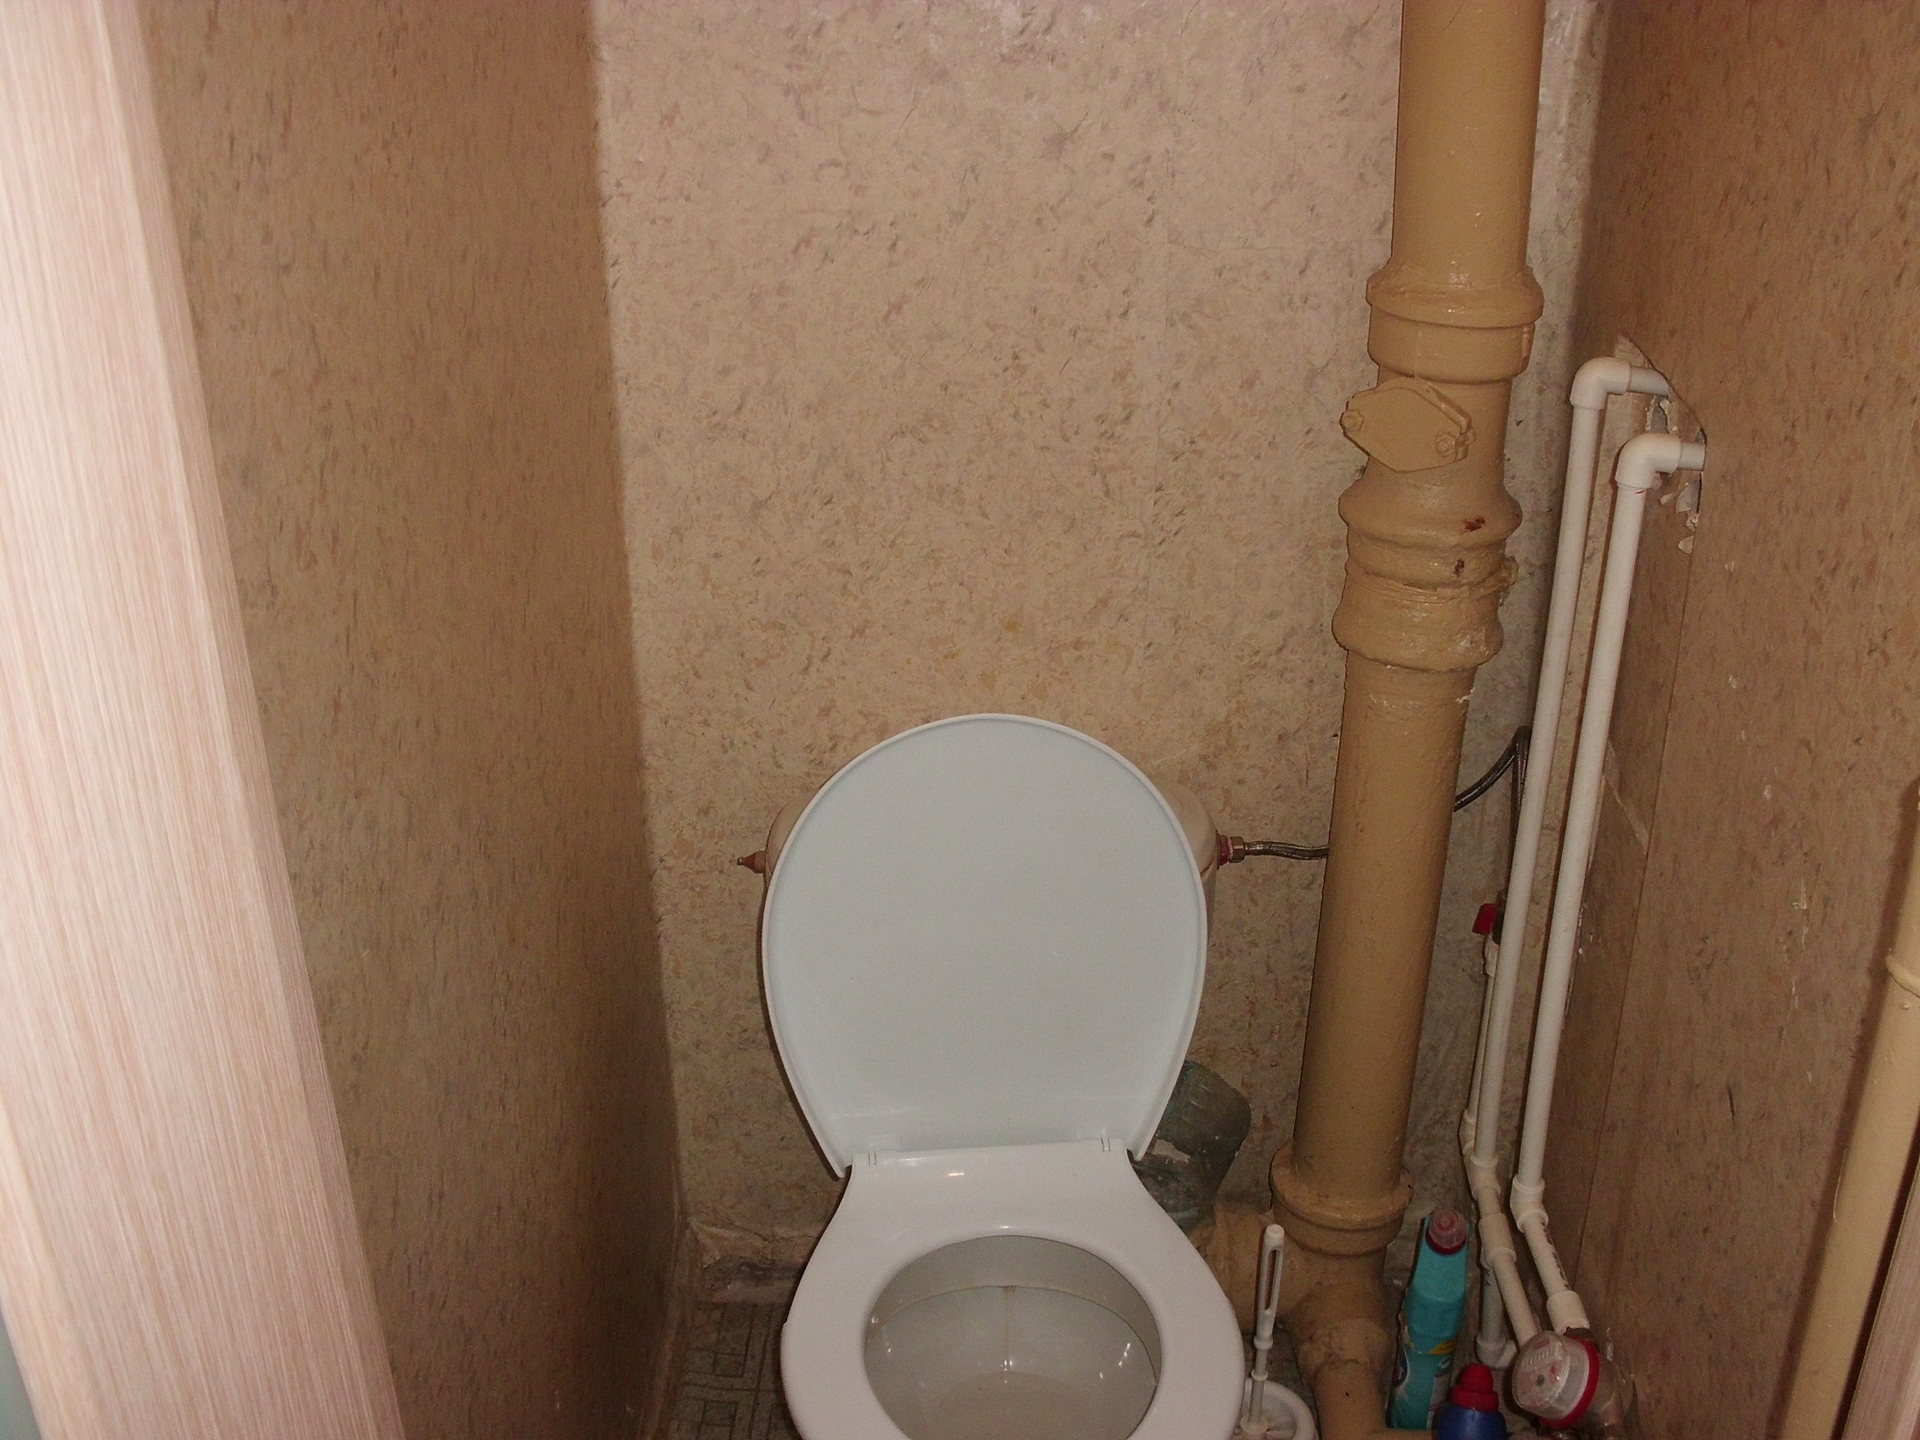 Ремонт труб в туалете. Трубы в туалете. Туалет с трубами сбоку. Панели для закрытия труб в туалете. Короб для туалета закрывающий трубы.